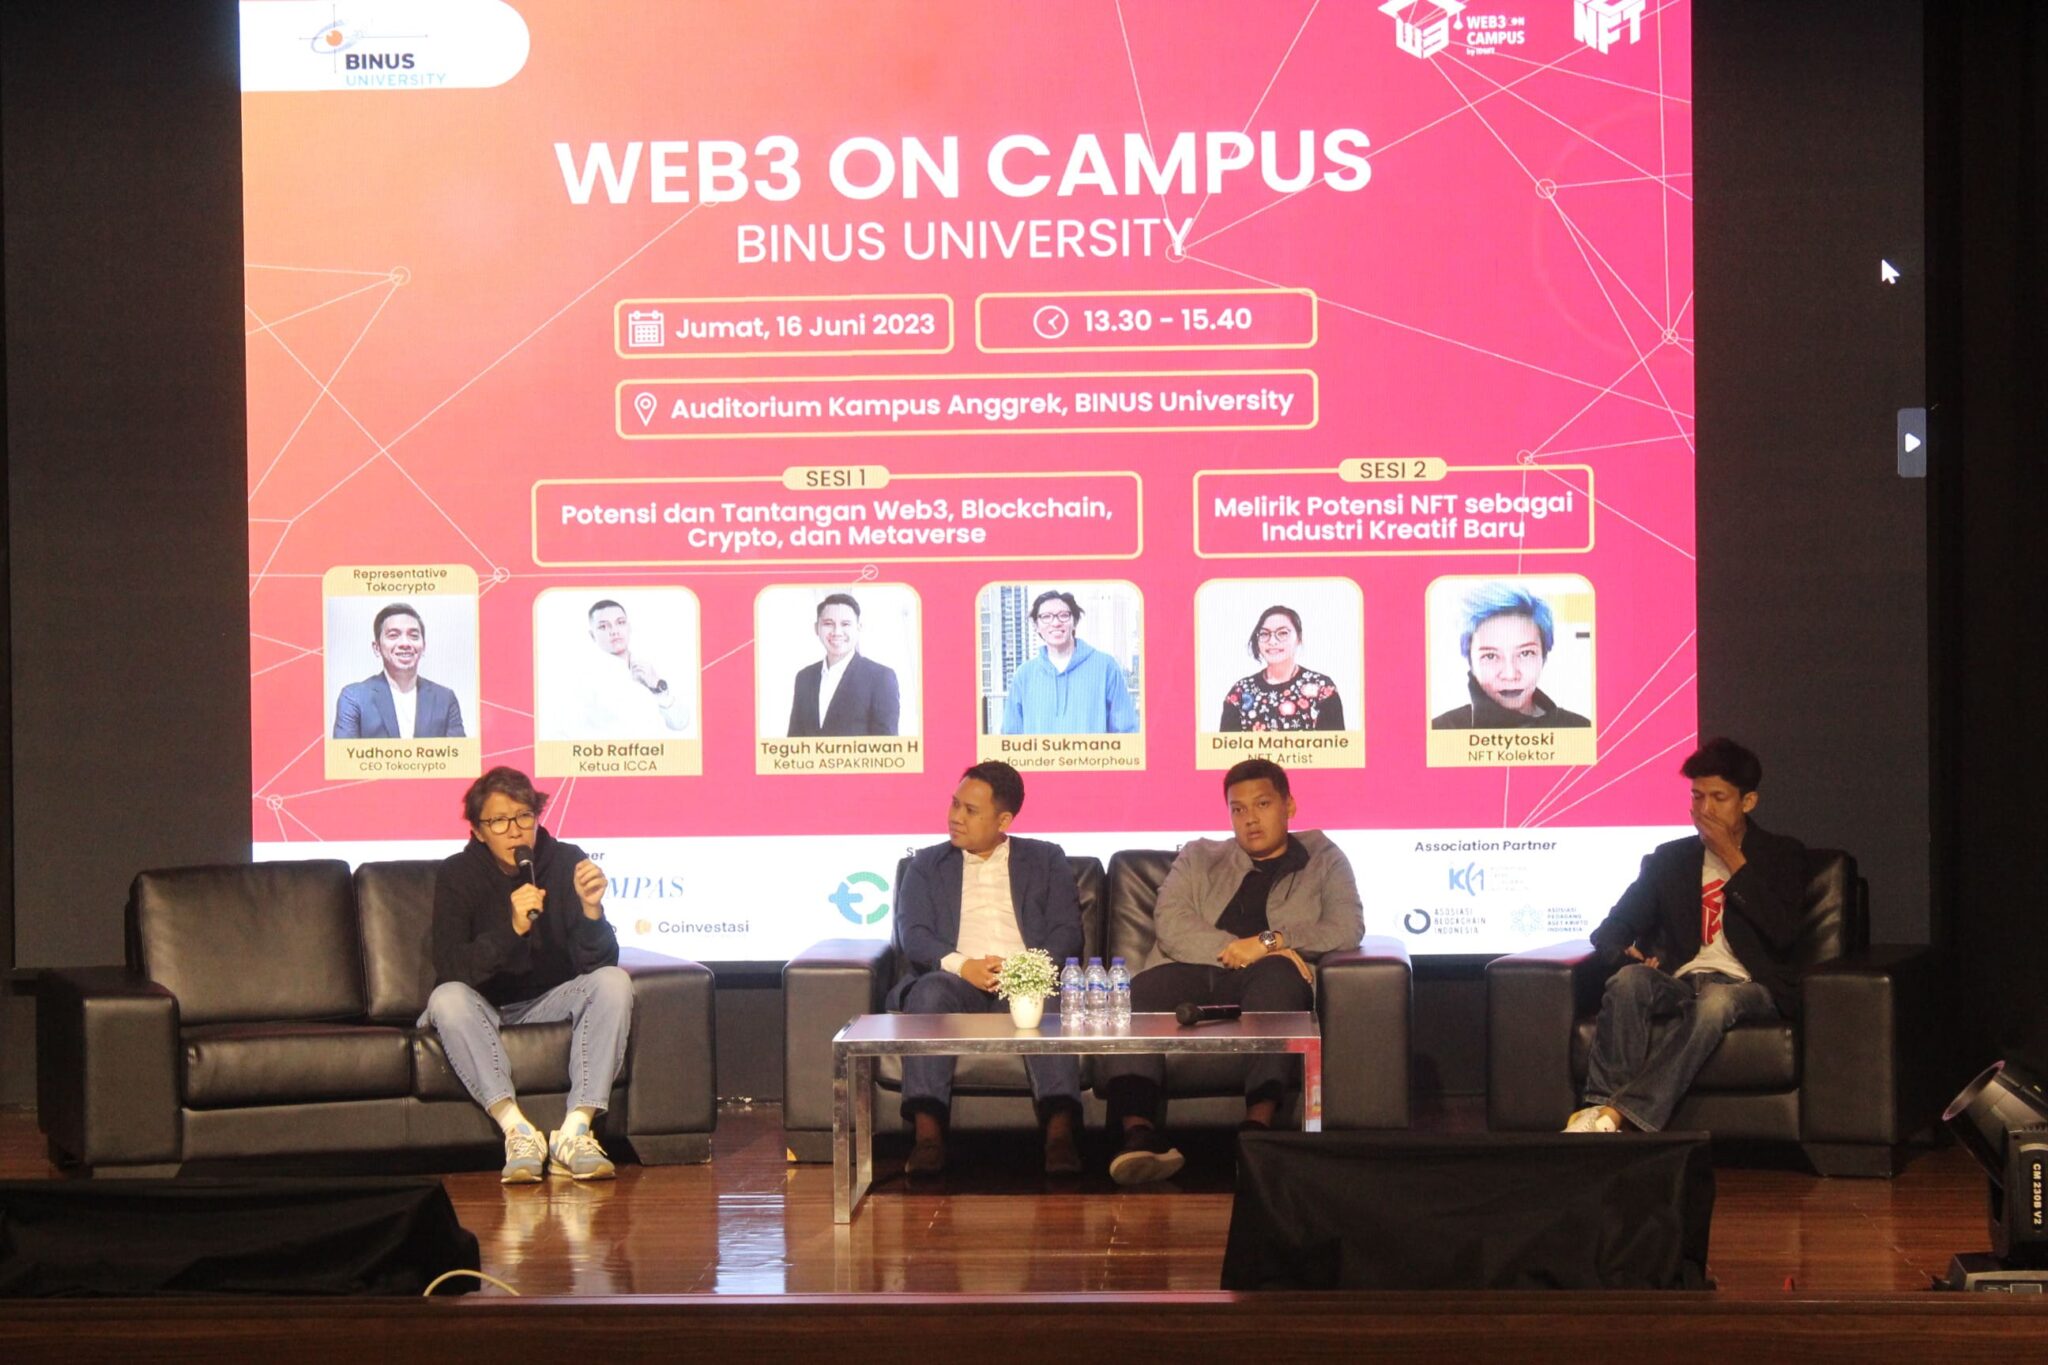 Tokocrypto bekerja sama dengan IDNFT menyelenggarakan sebuah acara edukatif, "Web3 On Campus" di Binus University pada Jumat, 16 Juni 2023. Sumber: IDNFT.